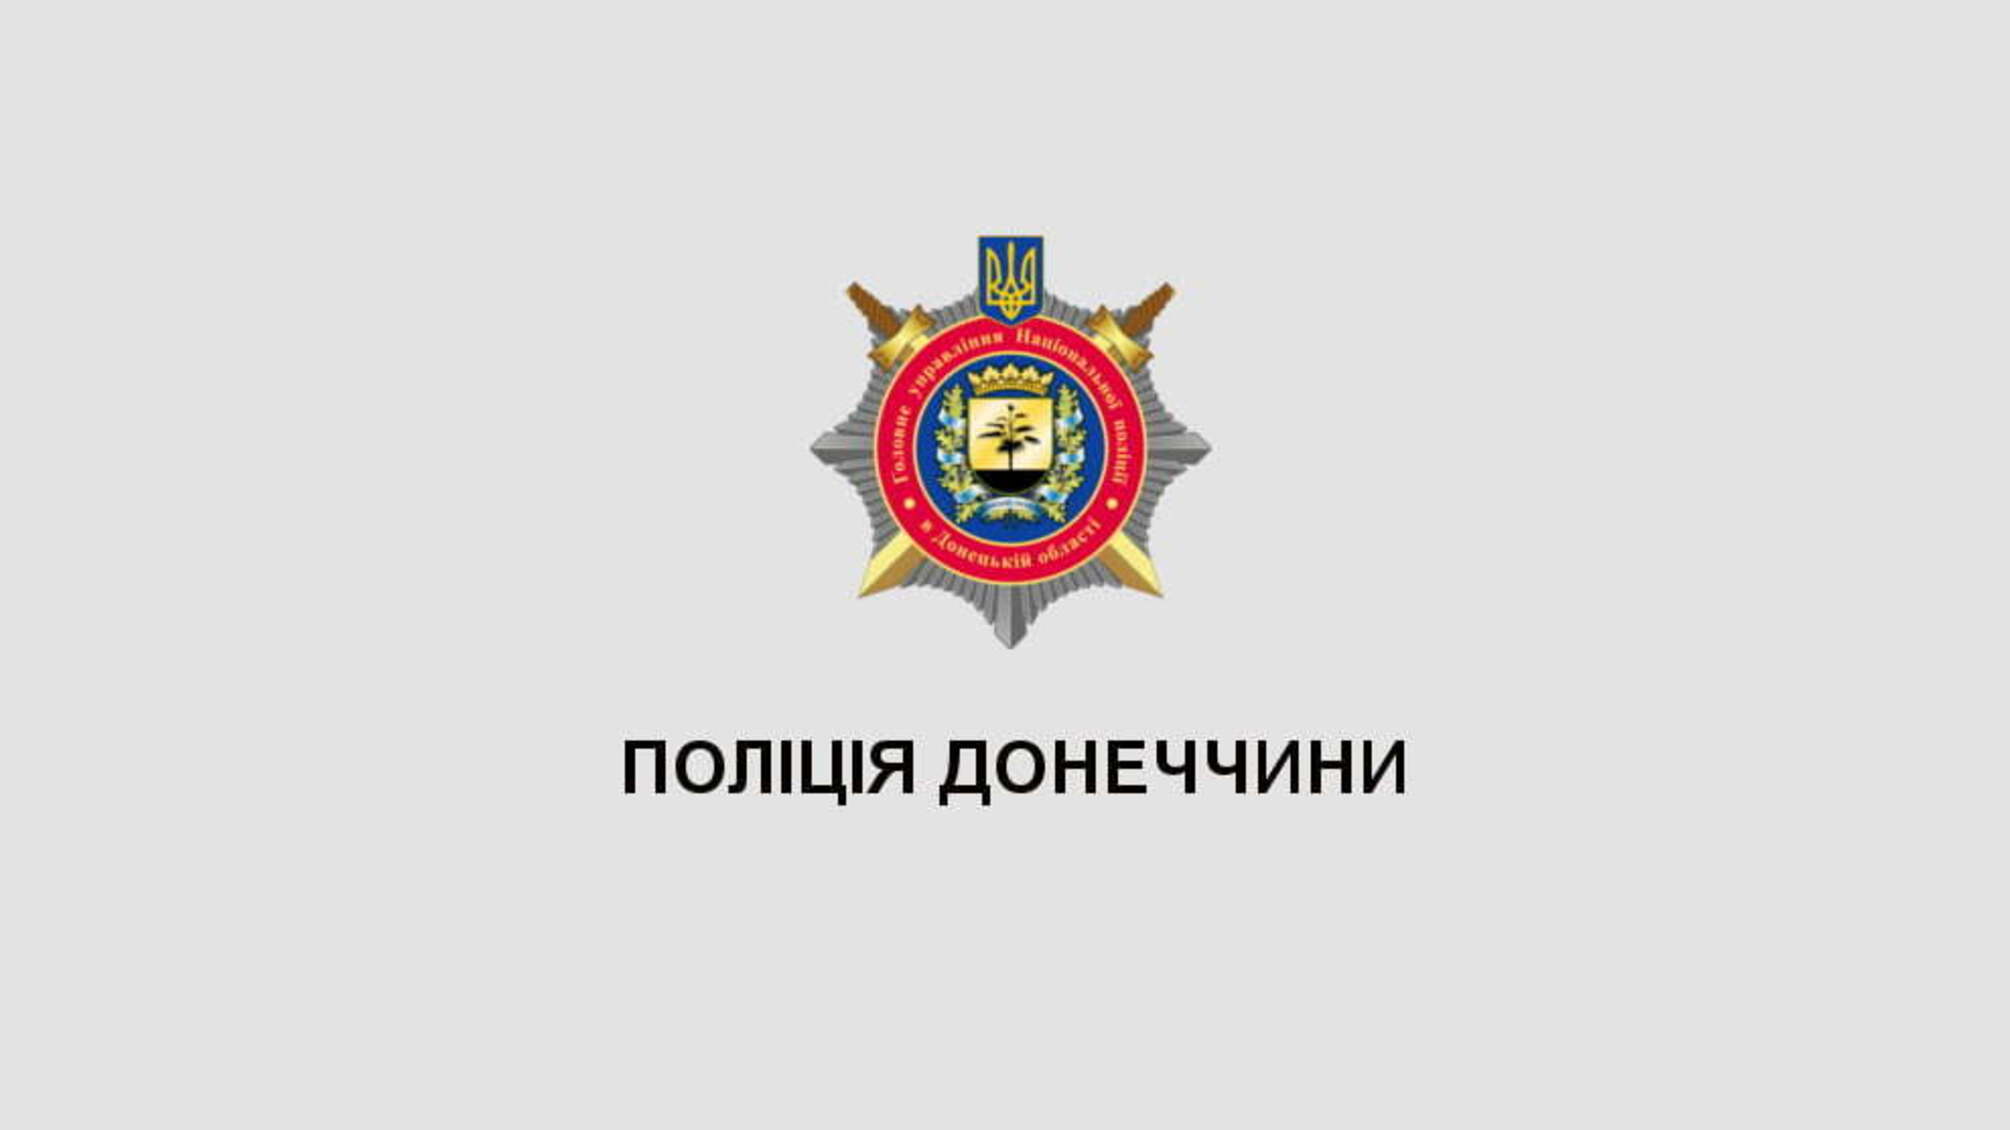 Поліція Донеччини та всеукраїнська правозахисна організація об’єднали зусилля для протидії домашньому та гендерно зумовленому насильству